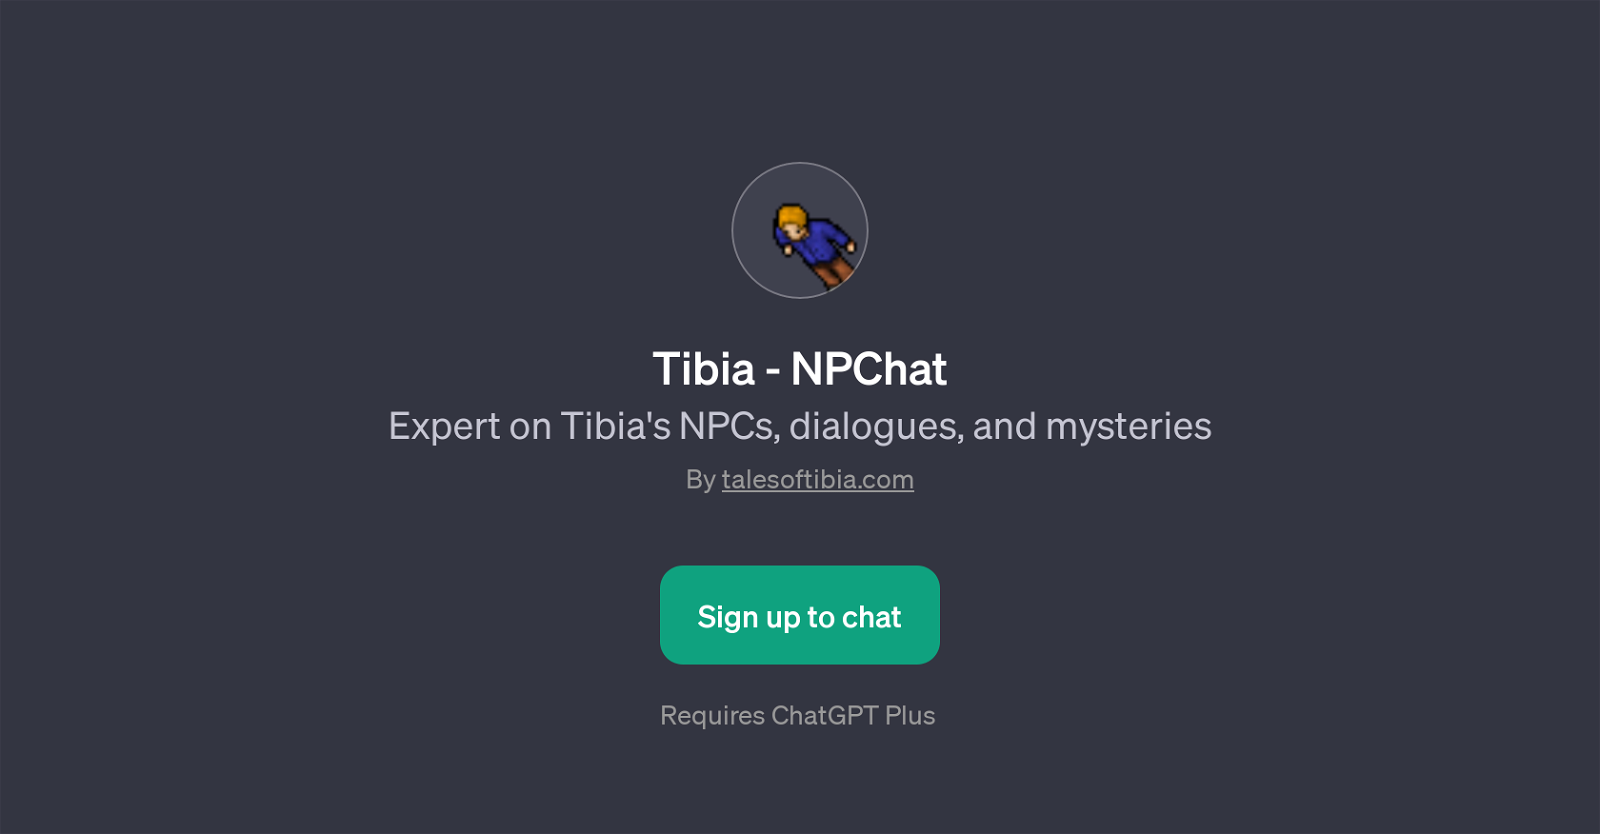 Tibia - NPChat website